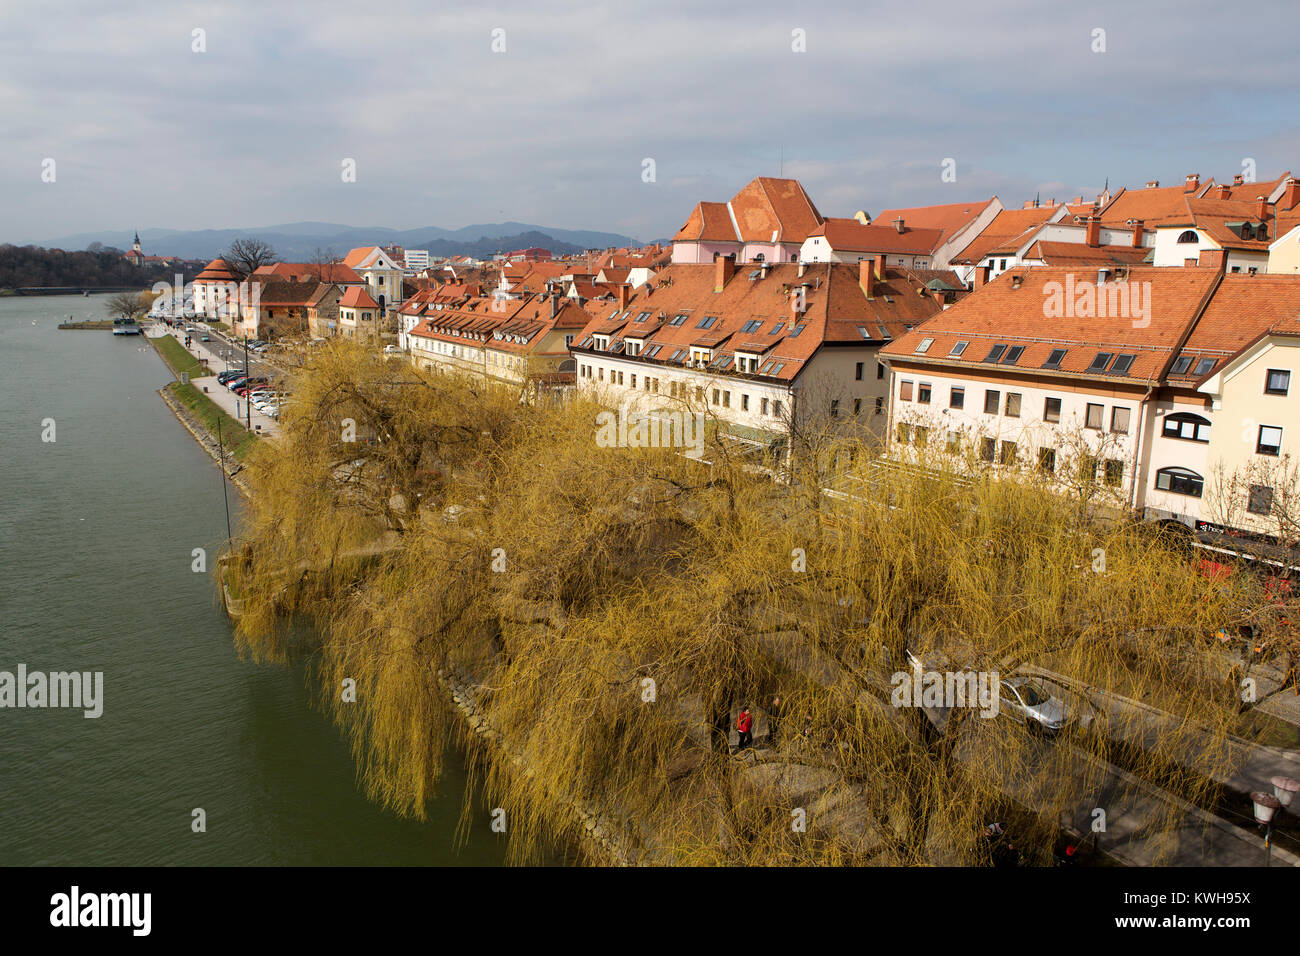 Le Carême riverside district de Maribor, Slovénie. La rivière Drava traverse la ville. Banque D'Images